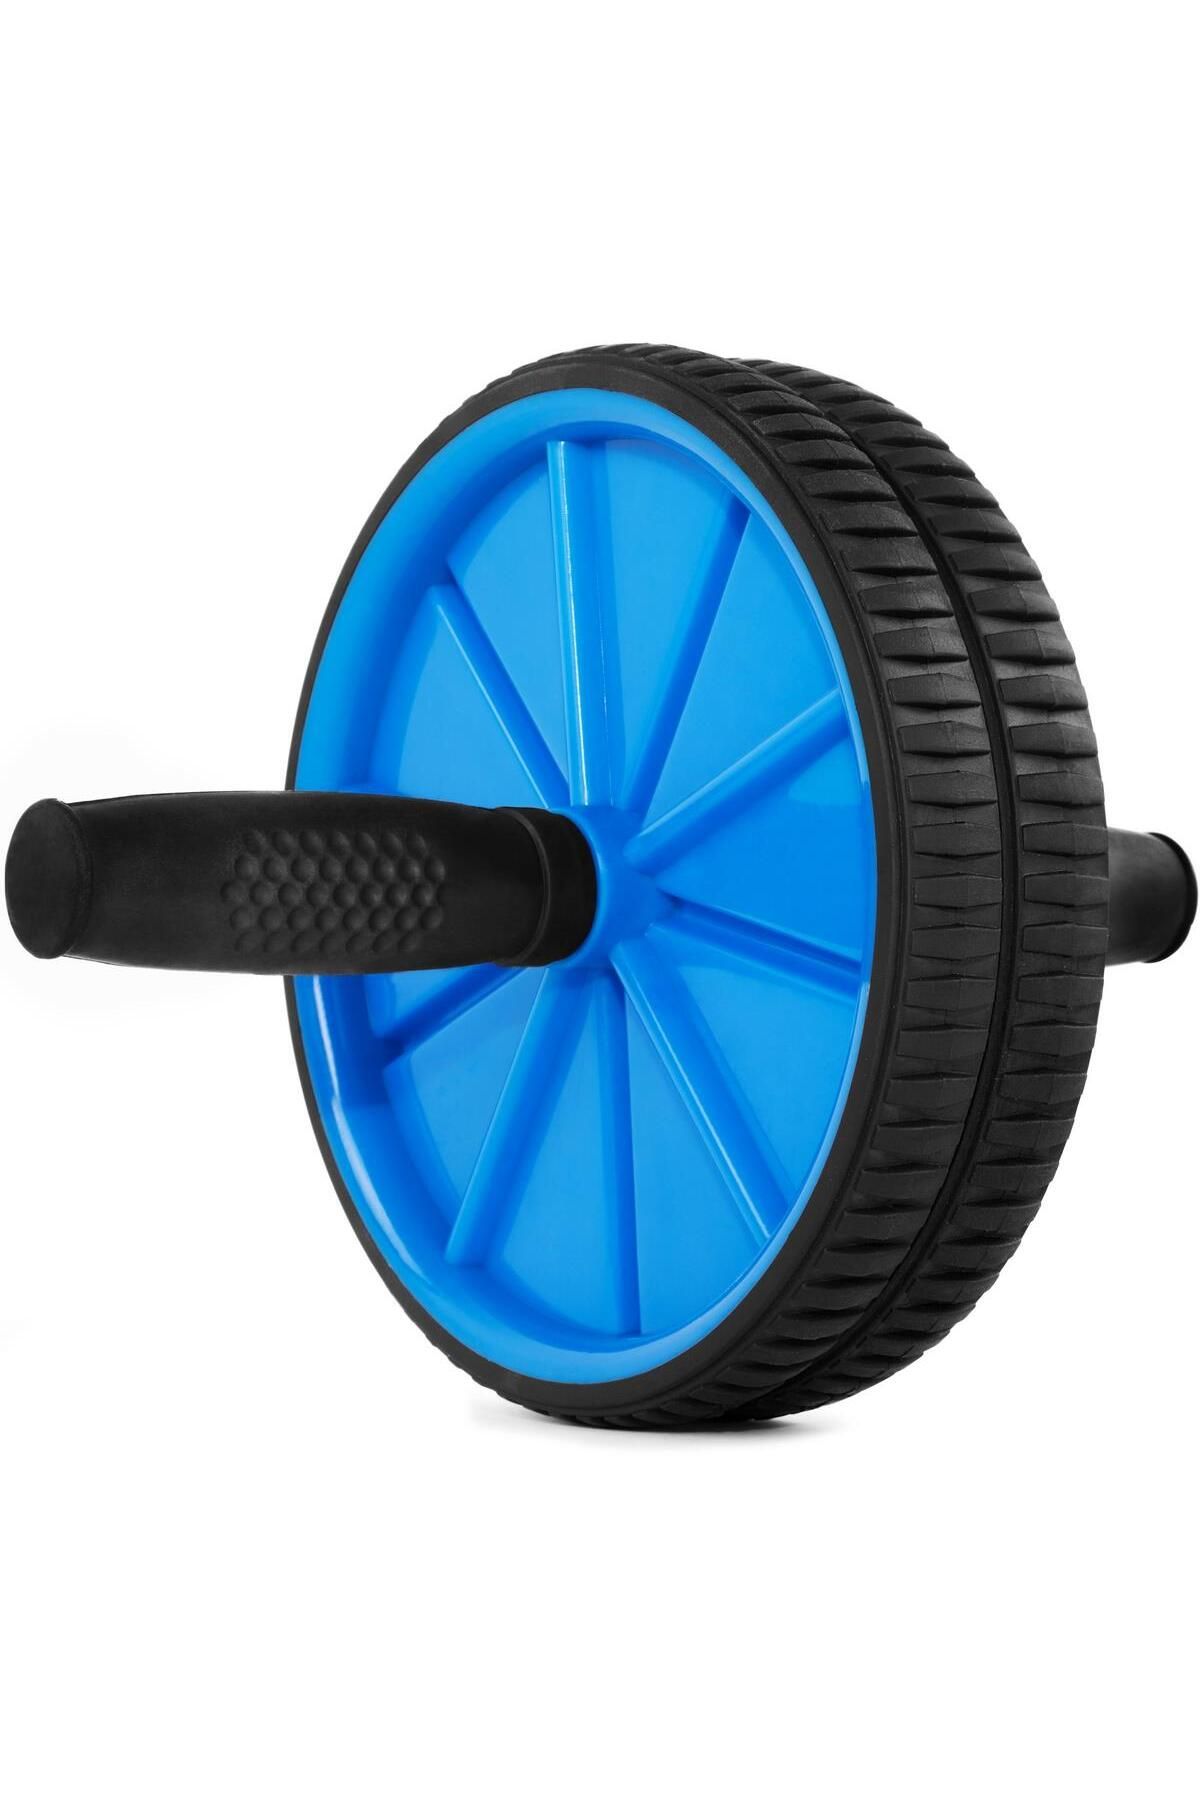 jetfast Fitness Karın Kası Sixpack Egzersiz Tekeri Spor Aleti Ab Wheel